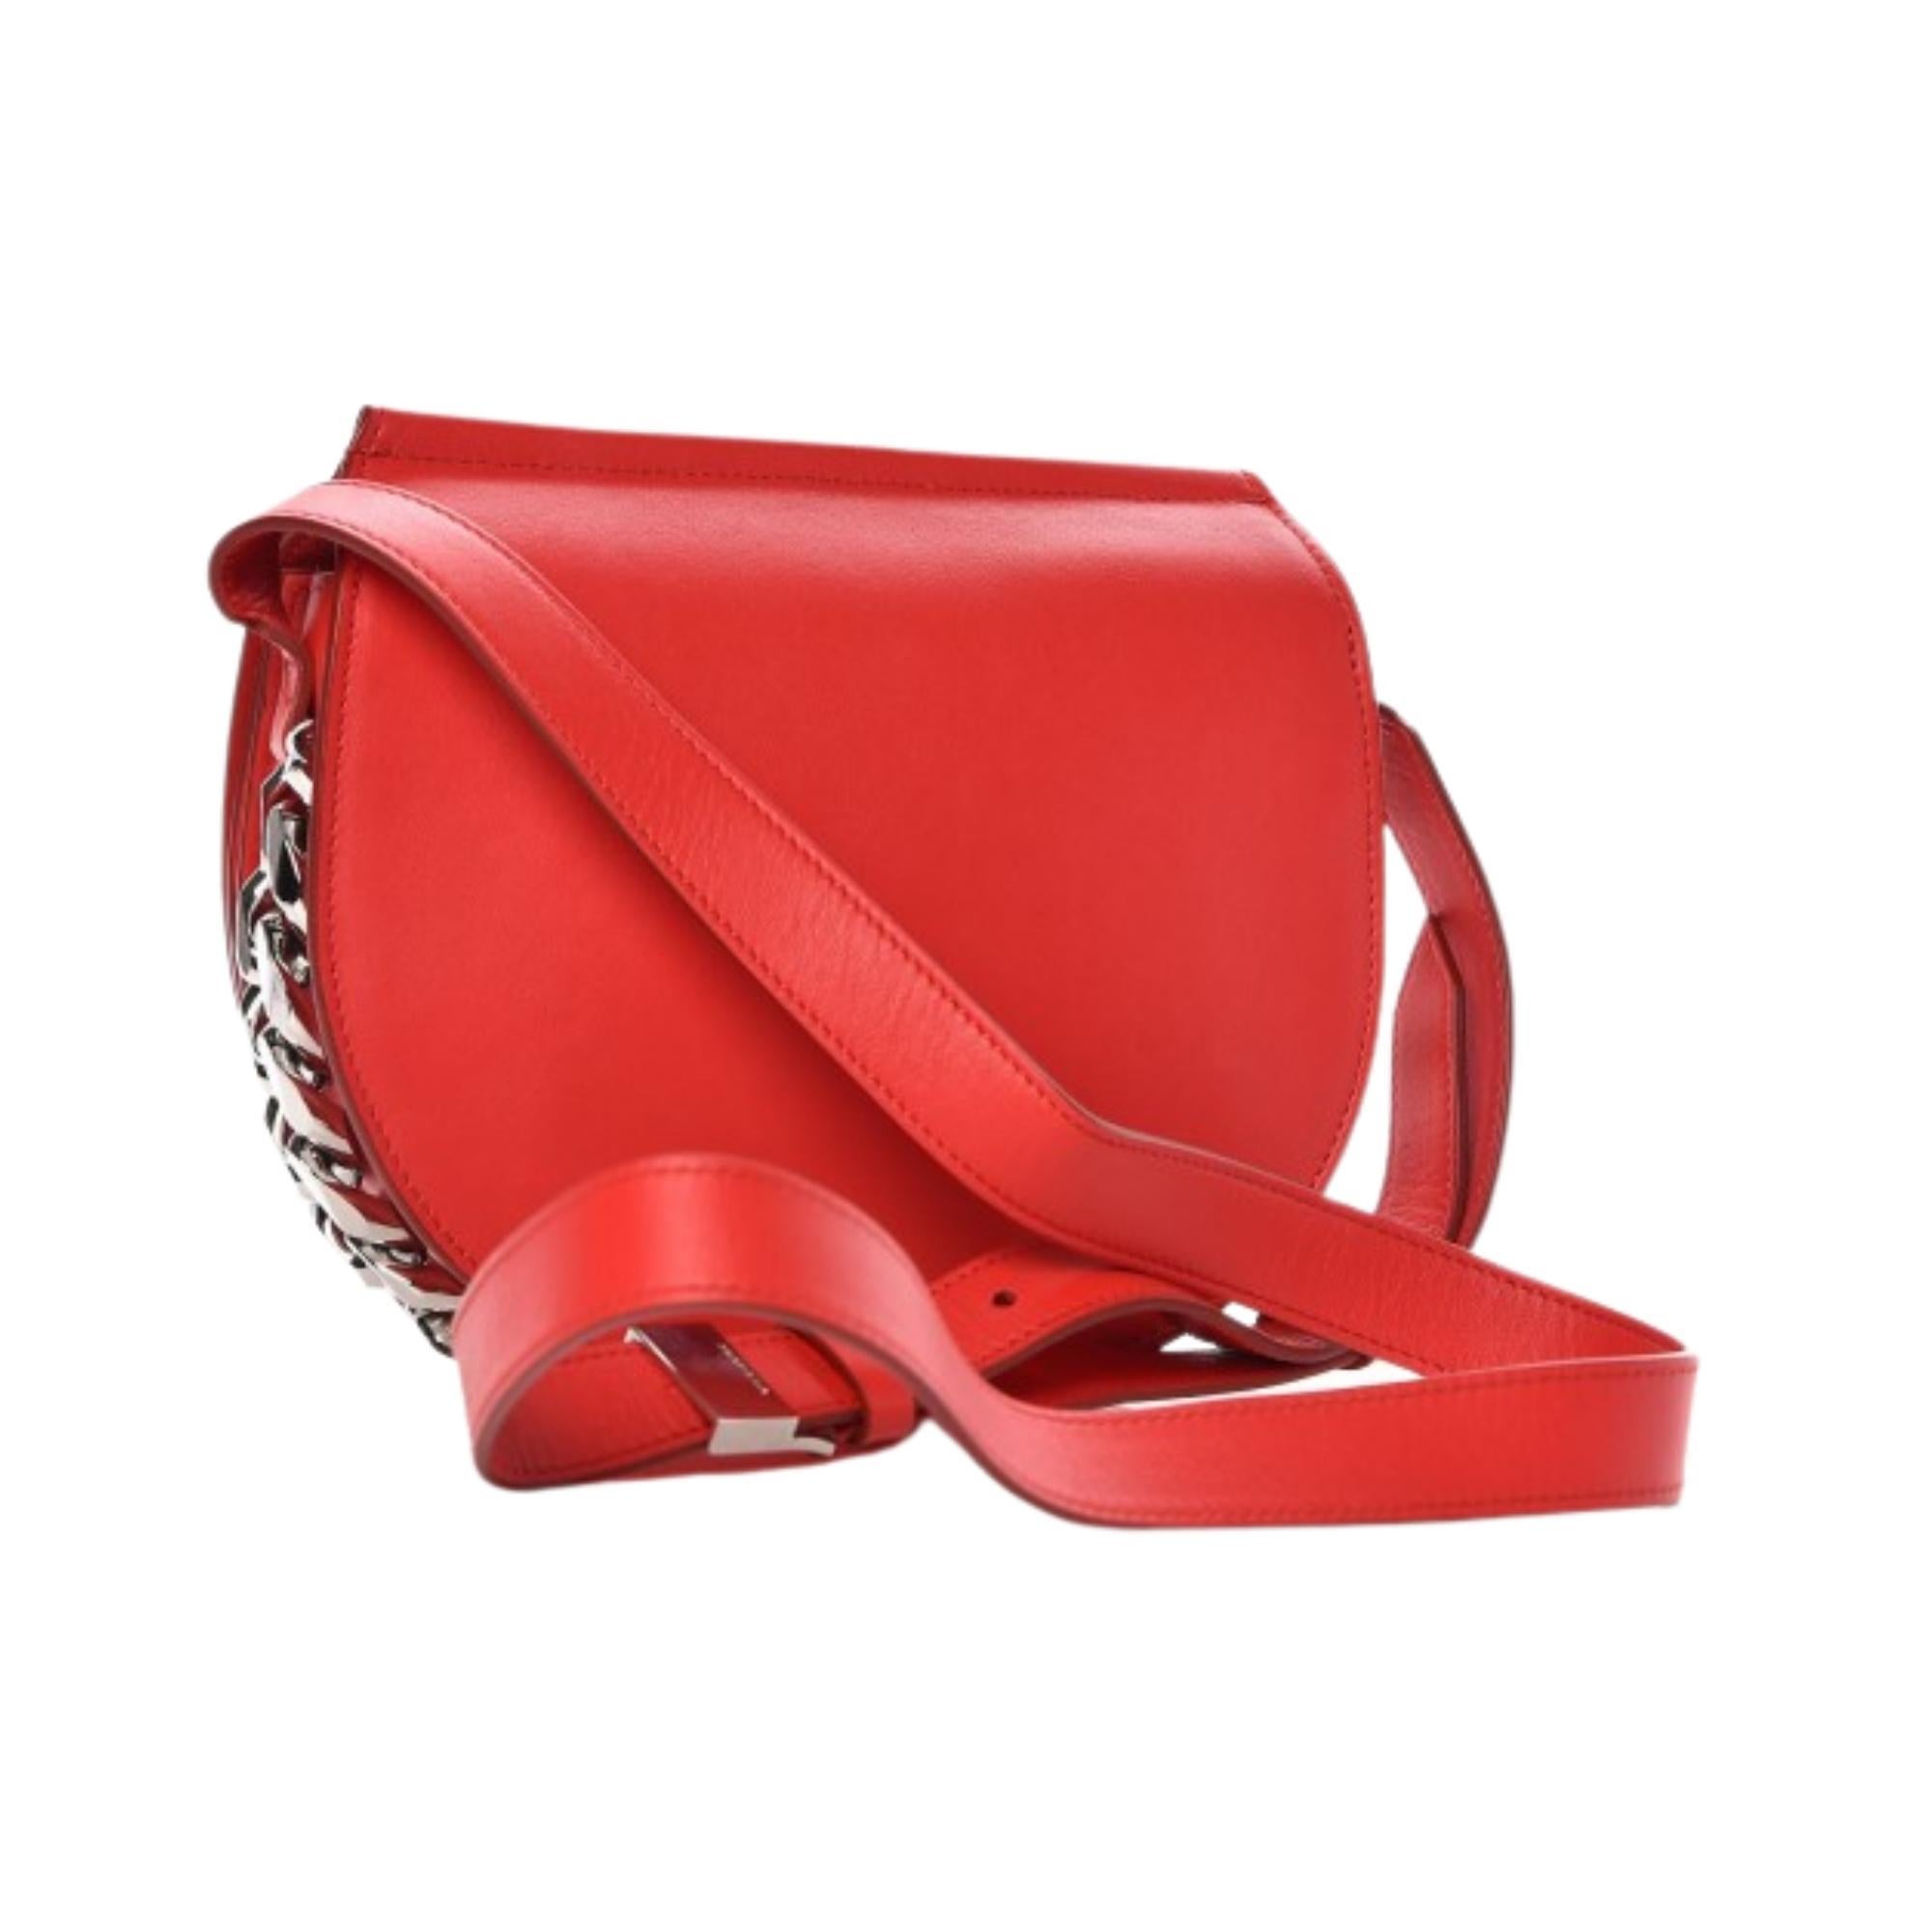 Diese einzigartige Satteltasche von Givenchy ist aus rotem Kalbsleder gefertigt und mit polierten Silberketten an den Seiten und am Boden versehen. Die Tasche hat einen Schulterriemen und eine Klappe mit Magnetverschluss, die sich zu einem beigen